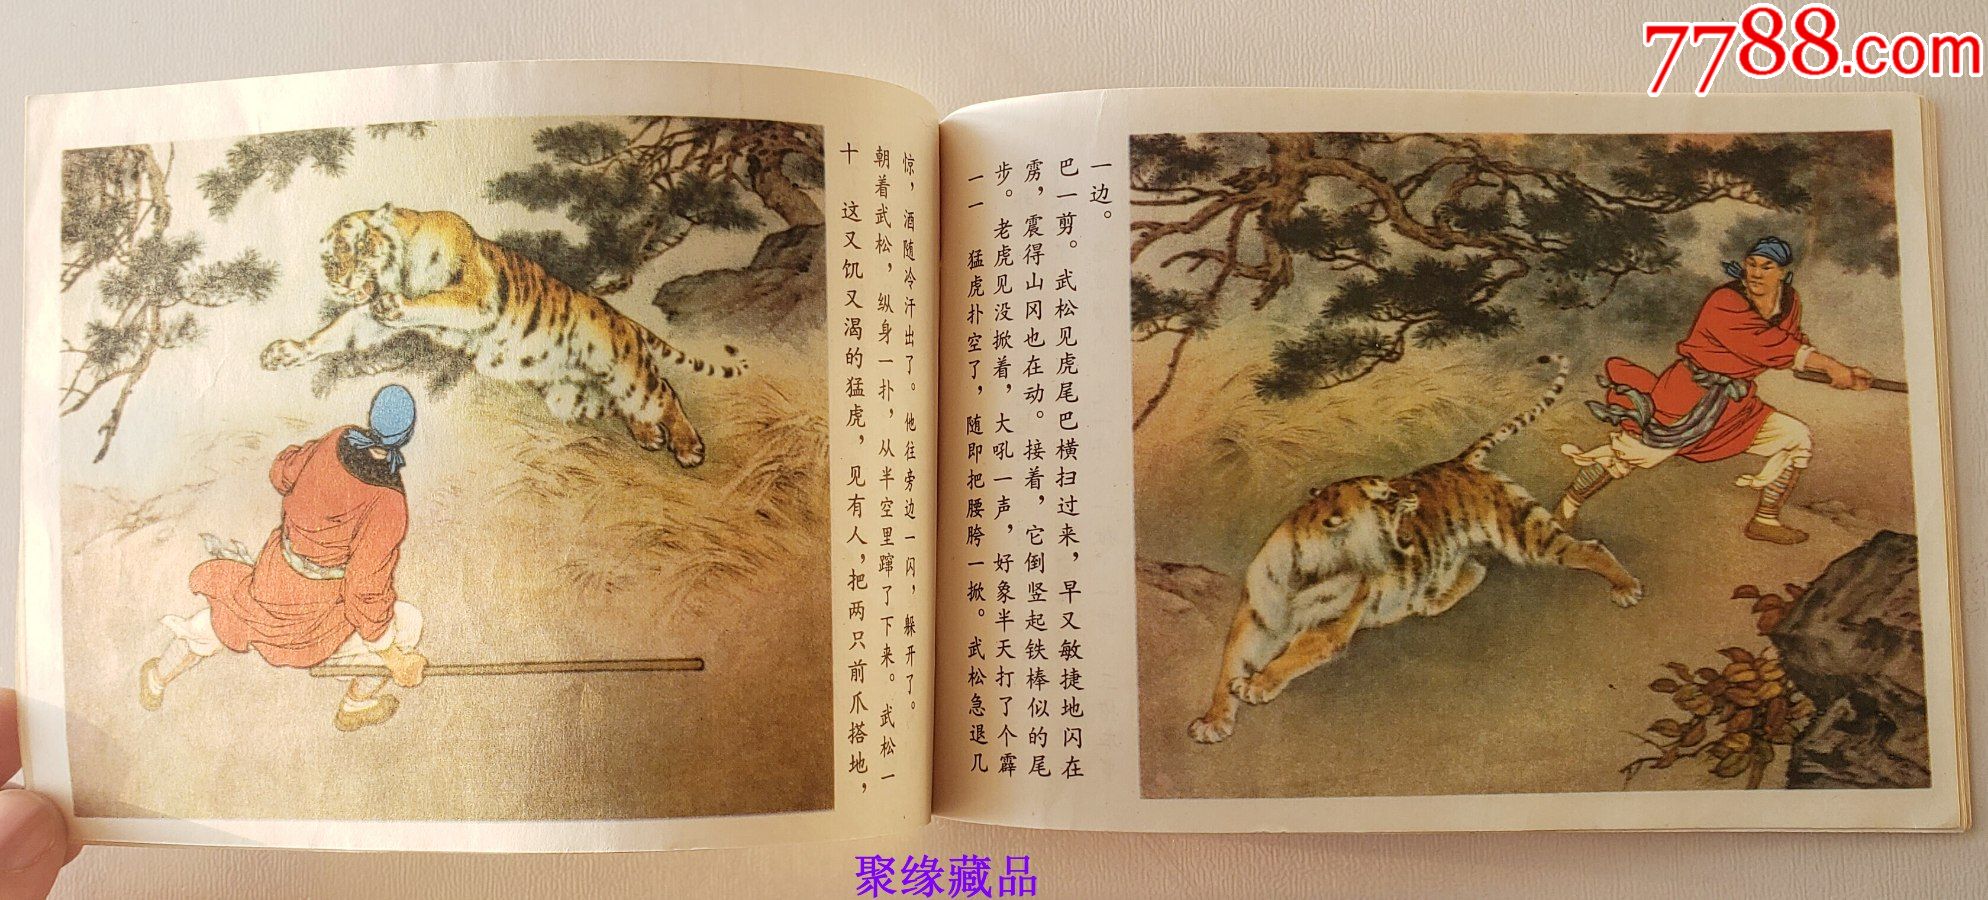 【32开·大开本】《武松打虎》·绘画:刘继卣·当代画圣·新中国